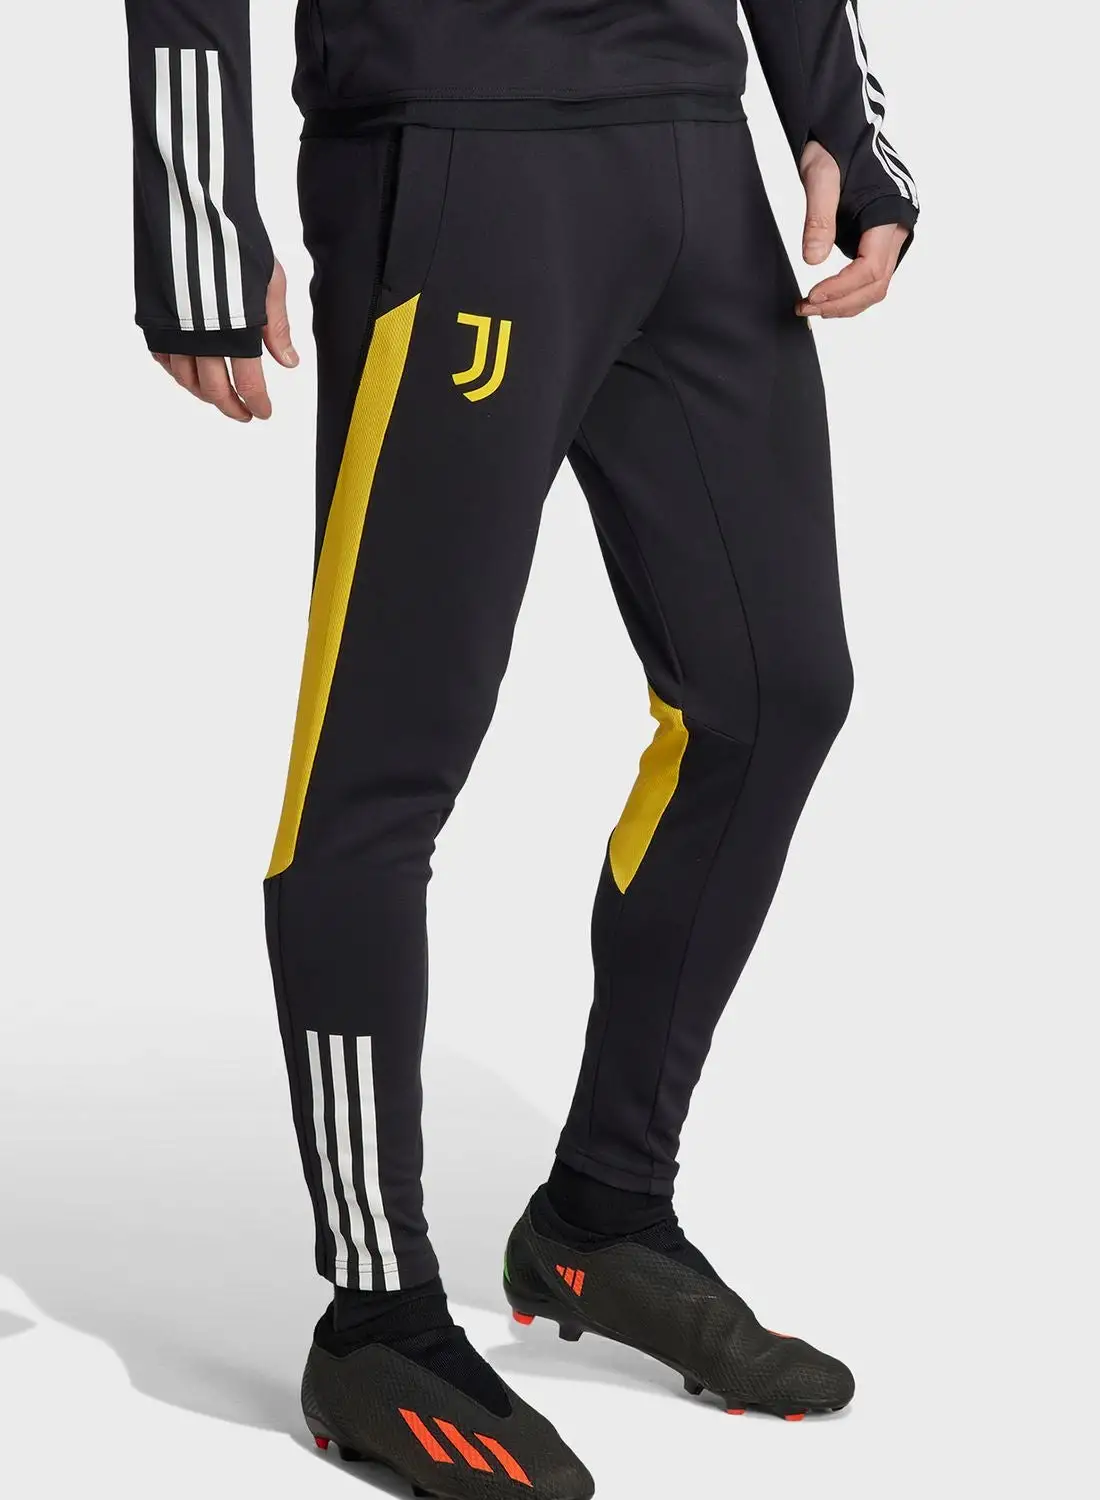 Adidas Juventus Presentation Pants